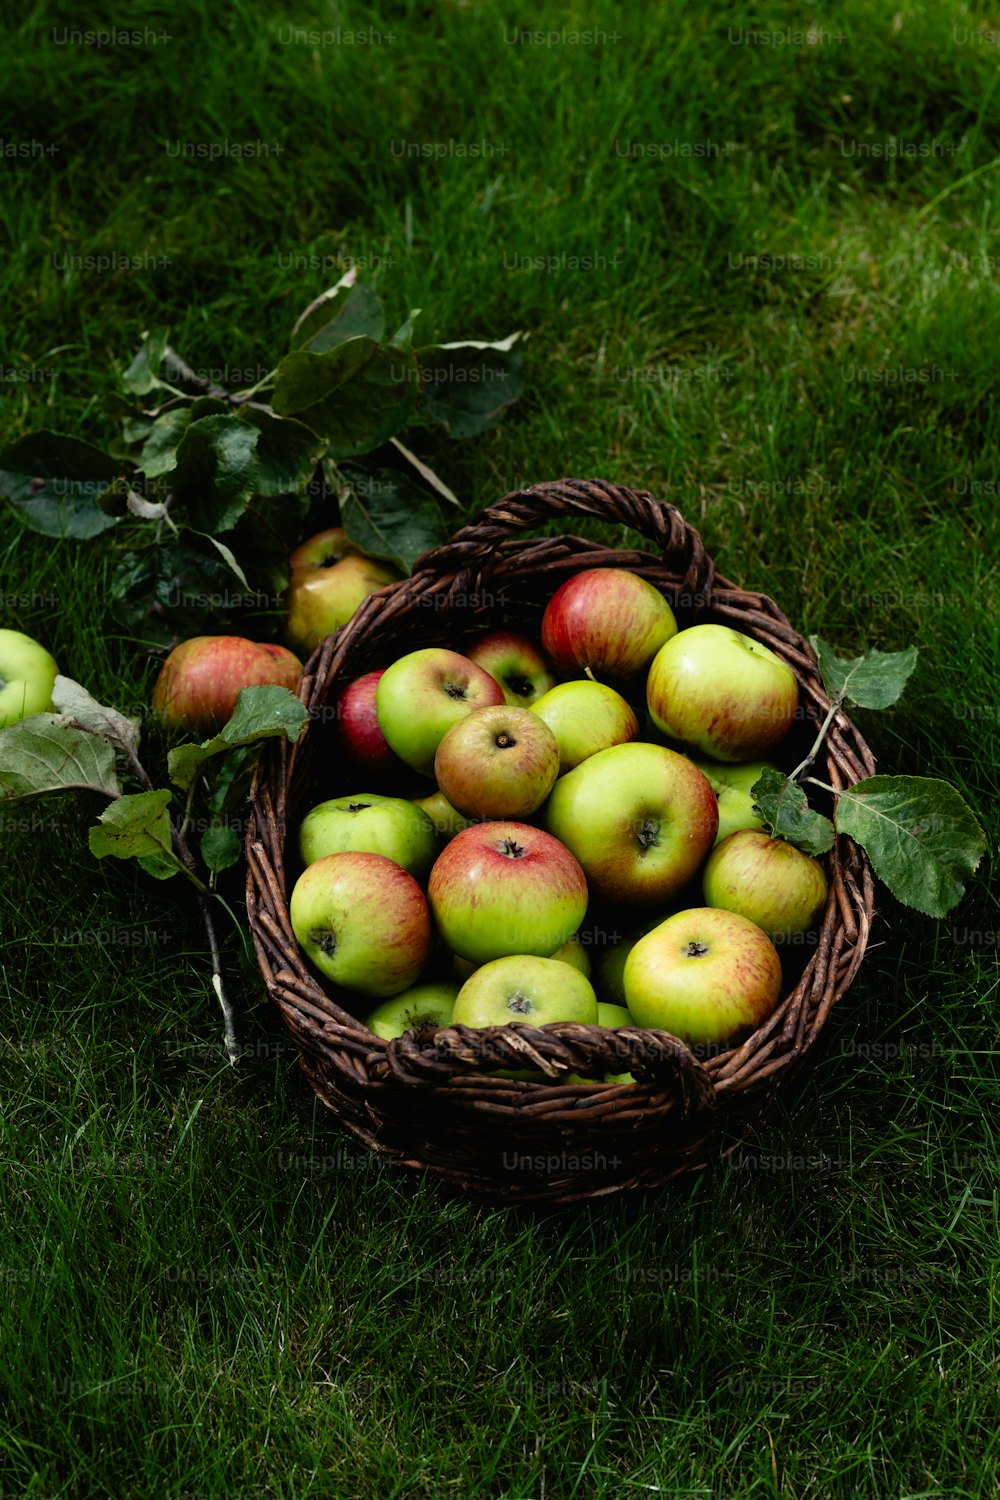 ein Korb gefüllt mit vielen grünen und roten Äpfeln